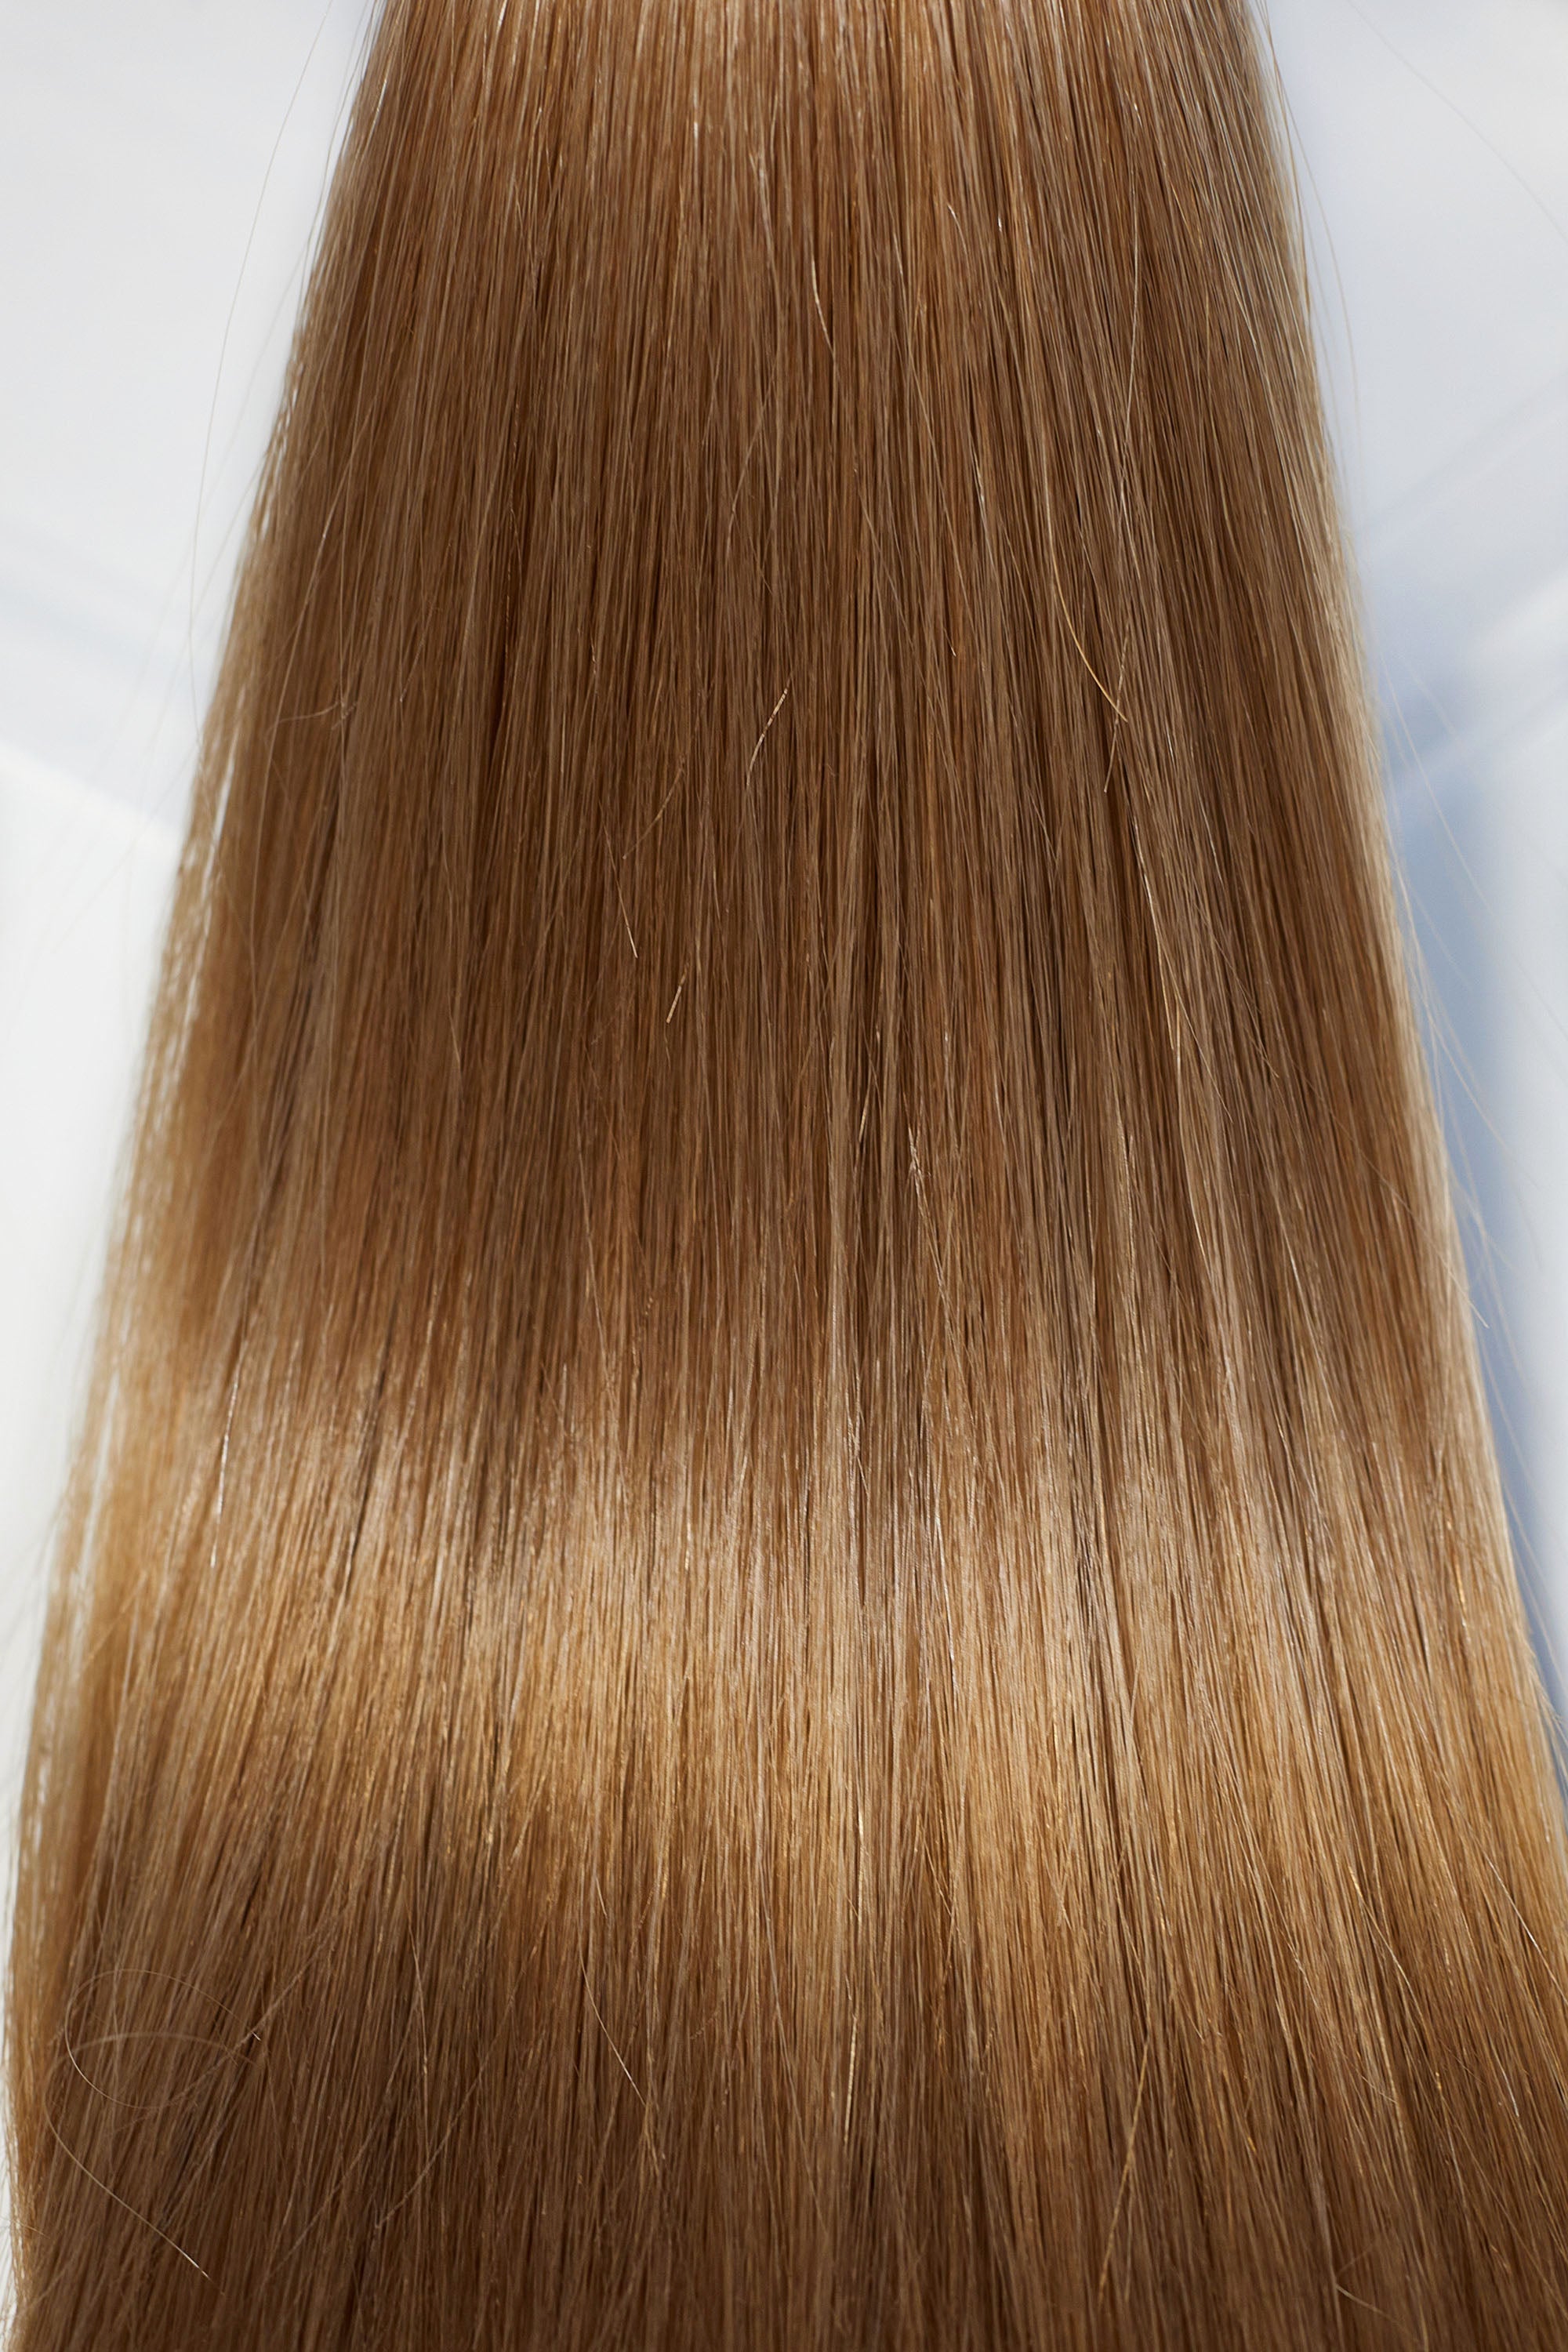 Behair professional Bulk hair "Premium" 16" (40cm) Natural Straight Caramel Brown #8 - 25g hair extensions